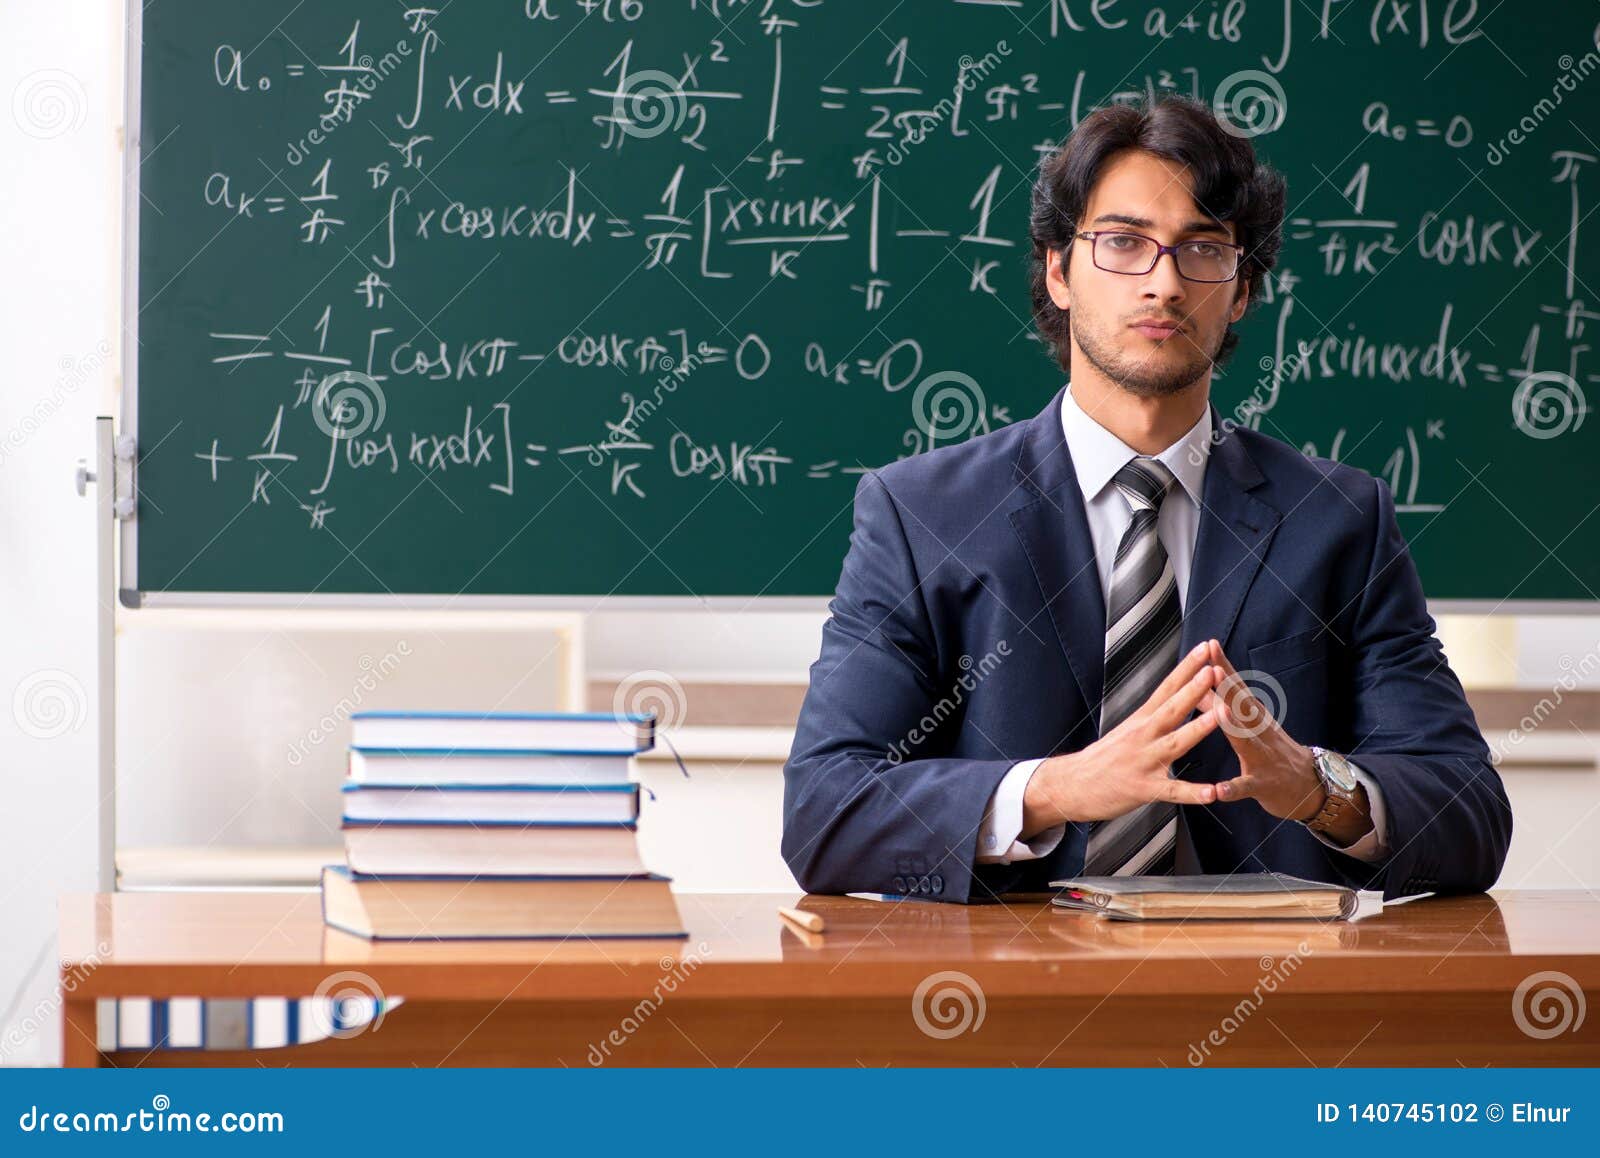 Ребята преподаватель. Учитель мужчина. Красивый учитель мужчина. Учитель математики мужчина. Прическа учителя мужчины.